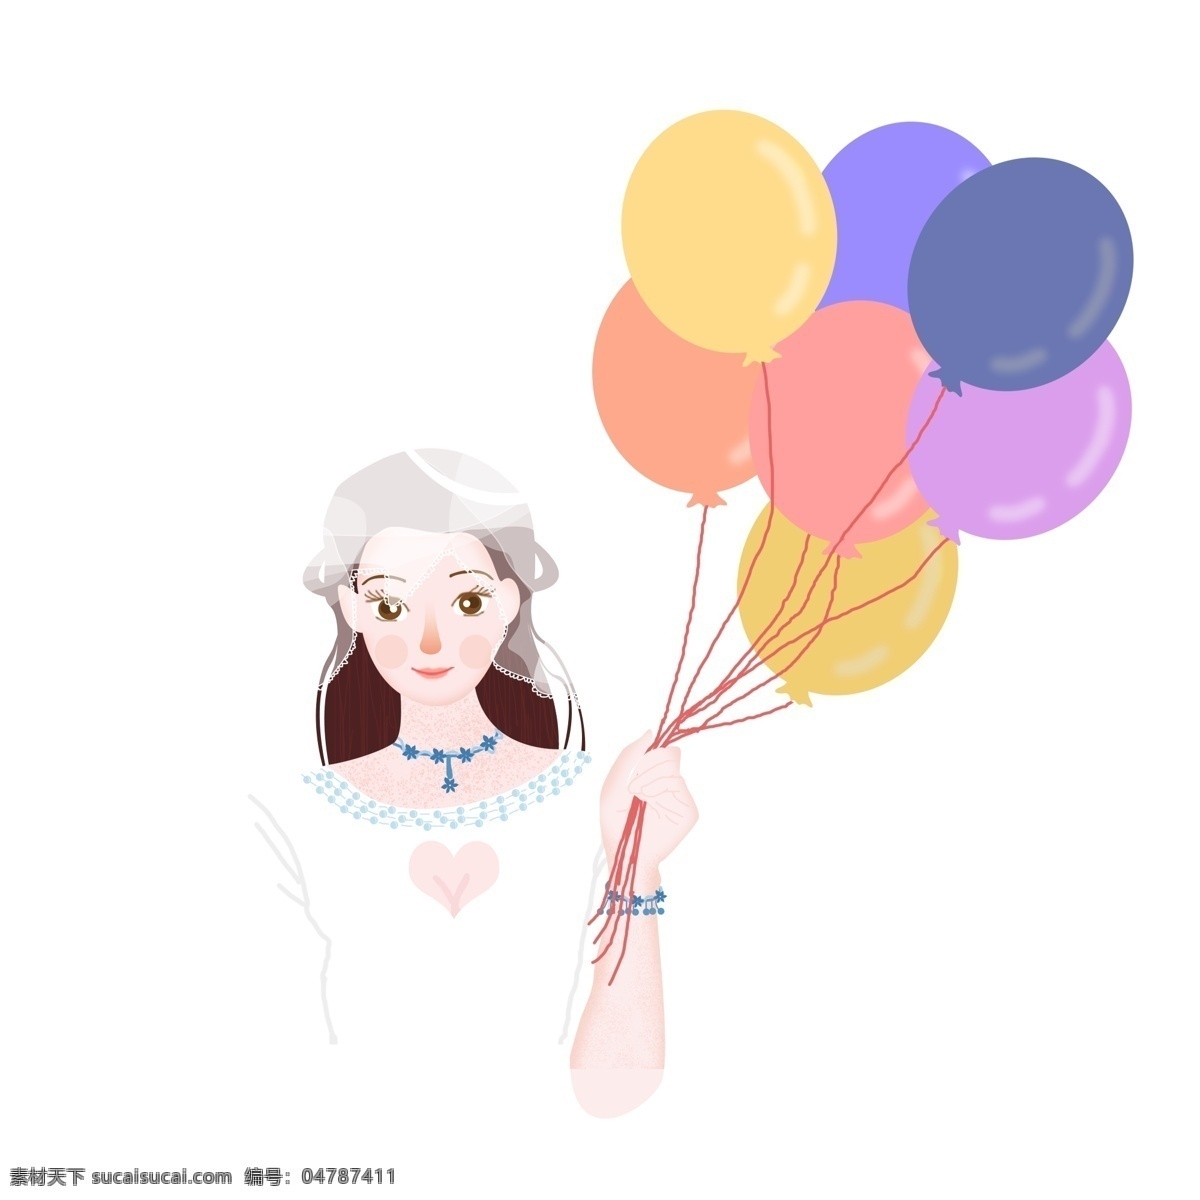 唯美 清新 气球 新娘 商用 元素 婚纱 少女 头纱 婚礼季 插画设计 手绘设计